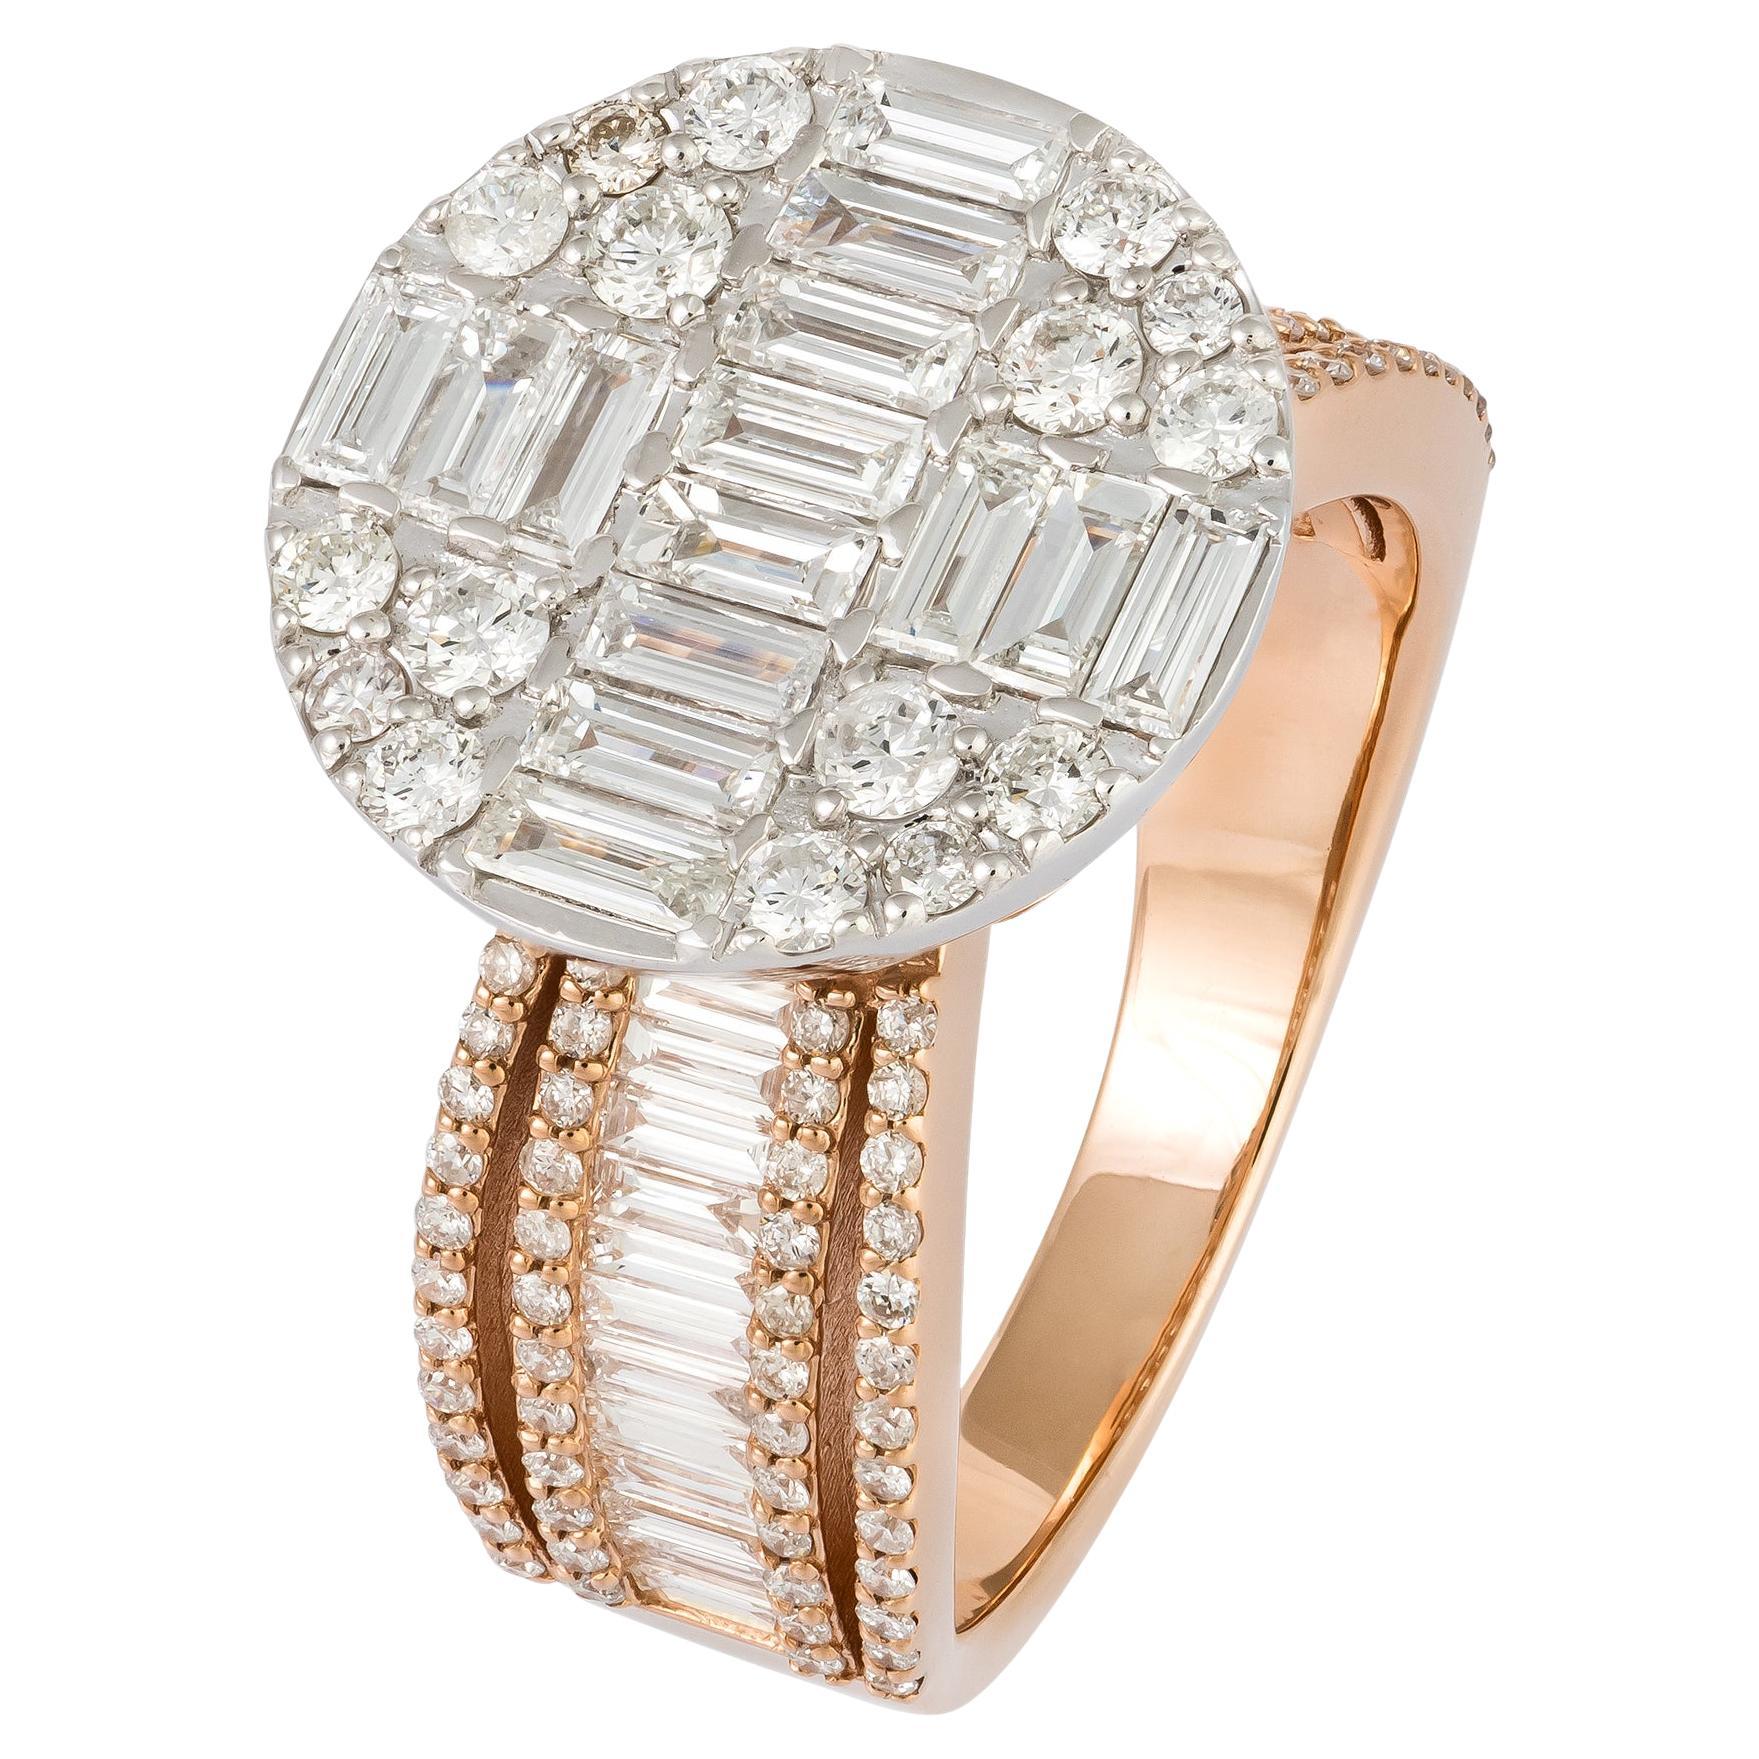 Breathtaking  White Pink 18K Gold White Diamond Ring For Her